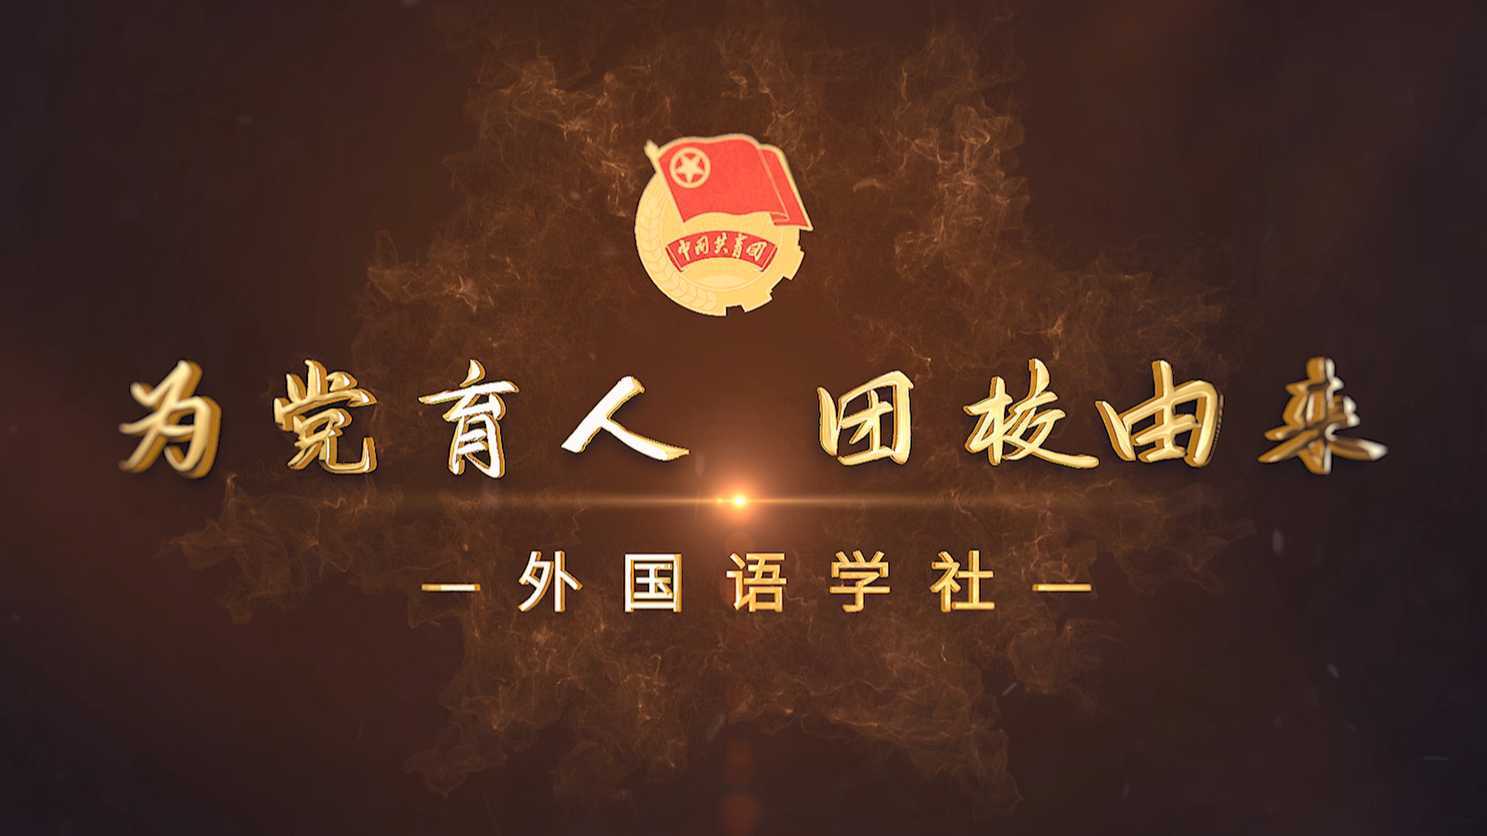 纪录片《青春之中国-外国语学社》丨为党育人 团校由来